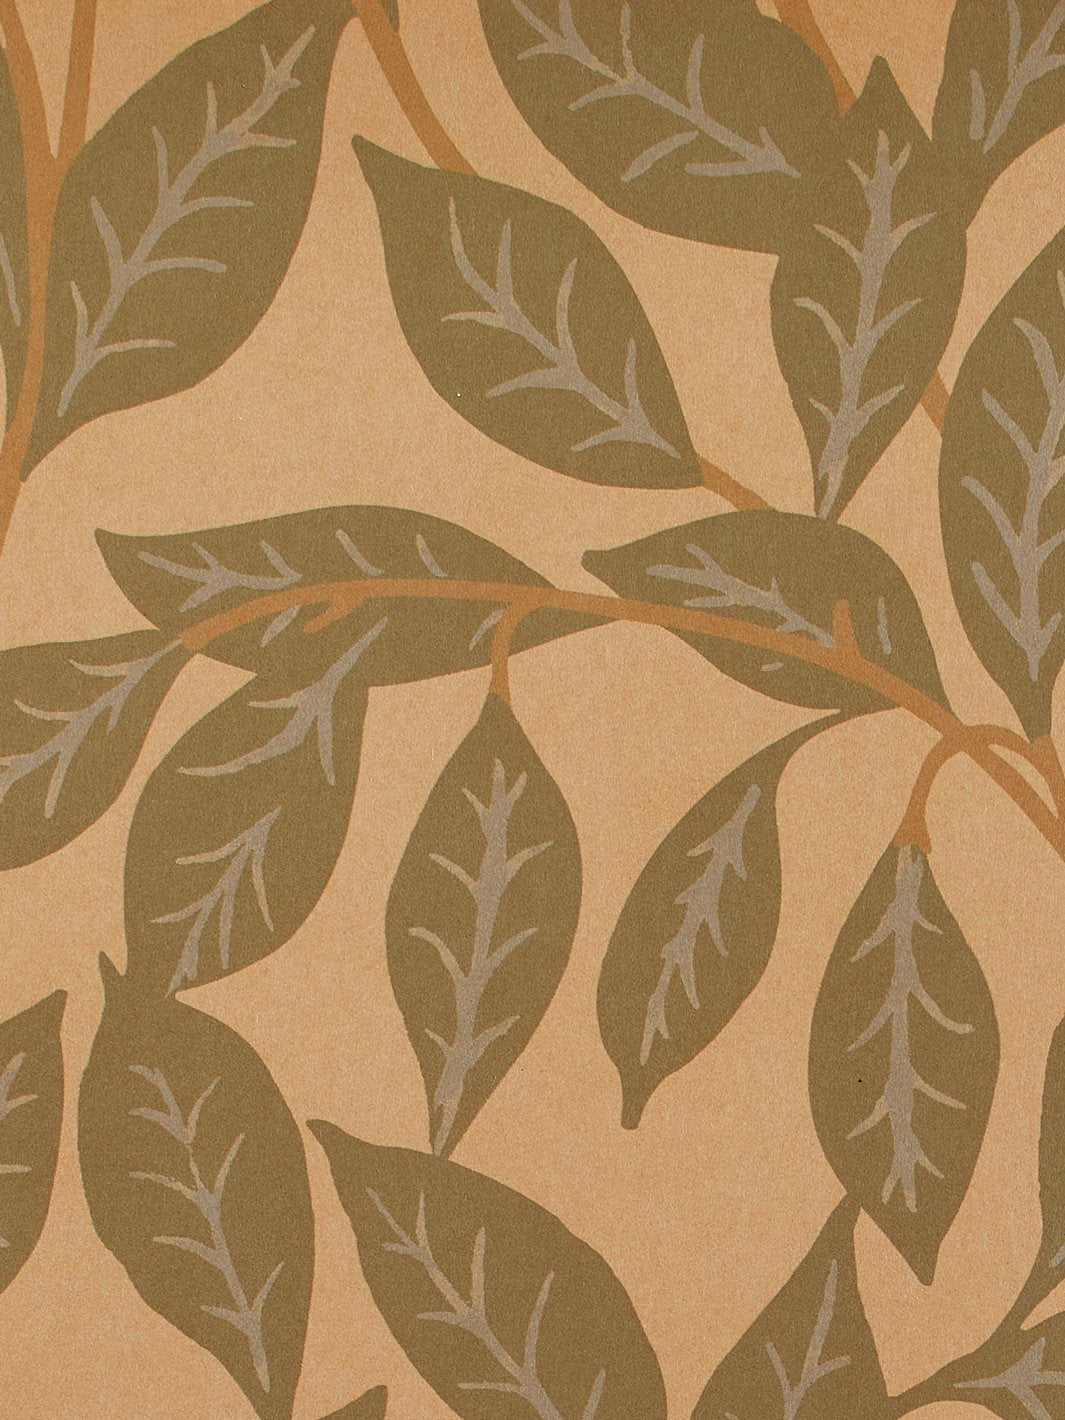 'Orchard Leaves' Kraft' Wallpaper by Wallshoppe - Green